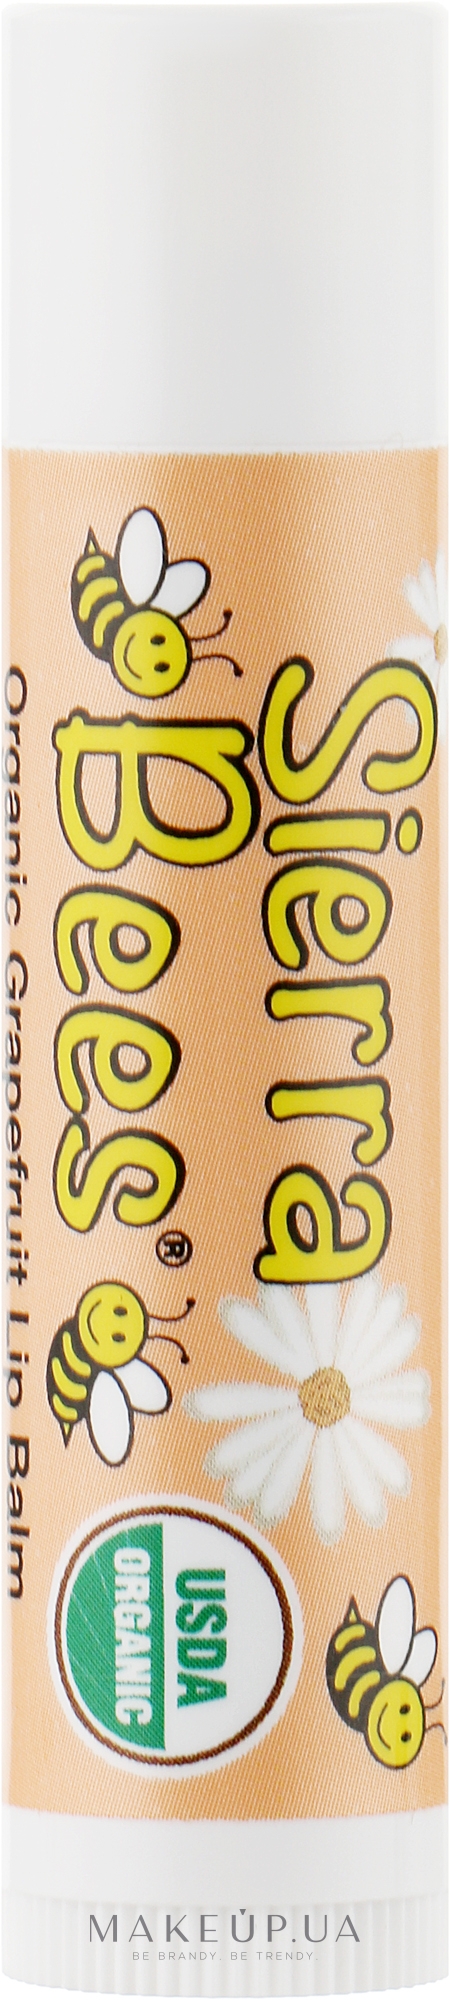 Бальзам для губ органічний "Грейпфрут" - Sierra Bees Grapefruit Organic Lip Balm — фото 4.25g